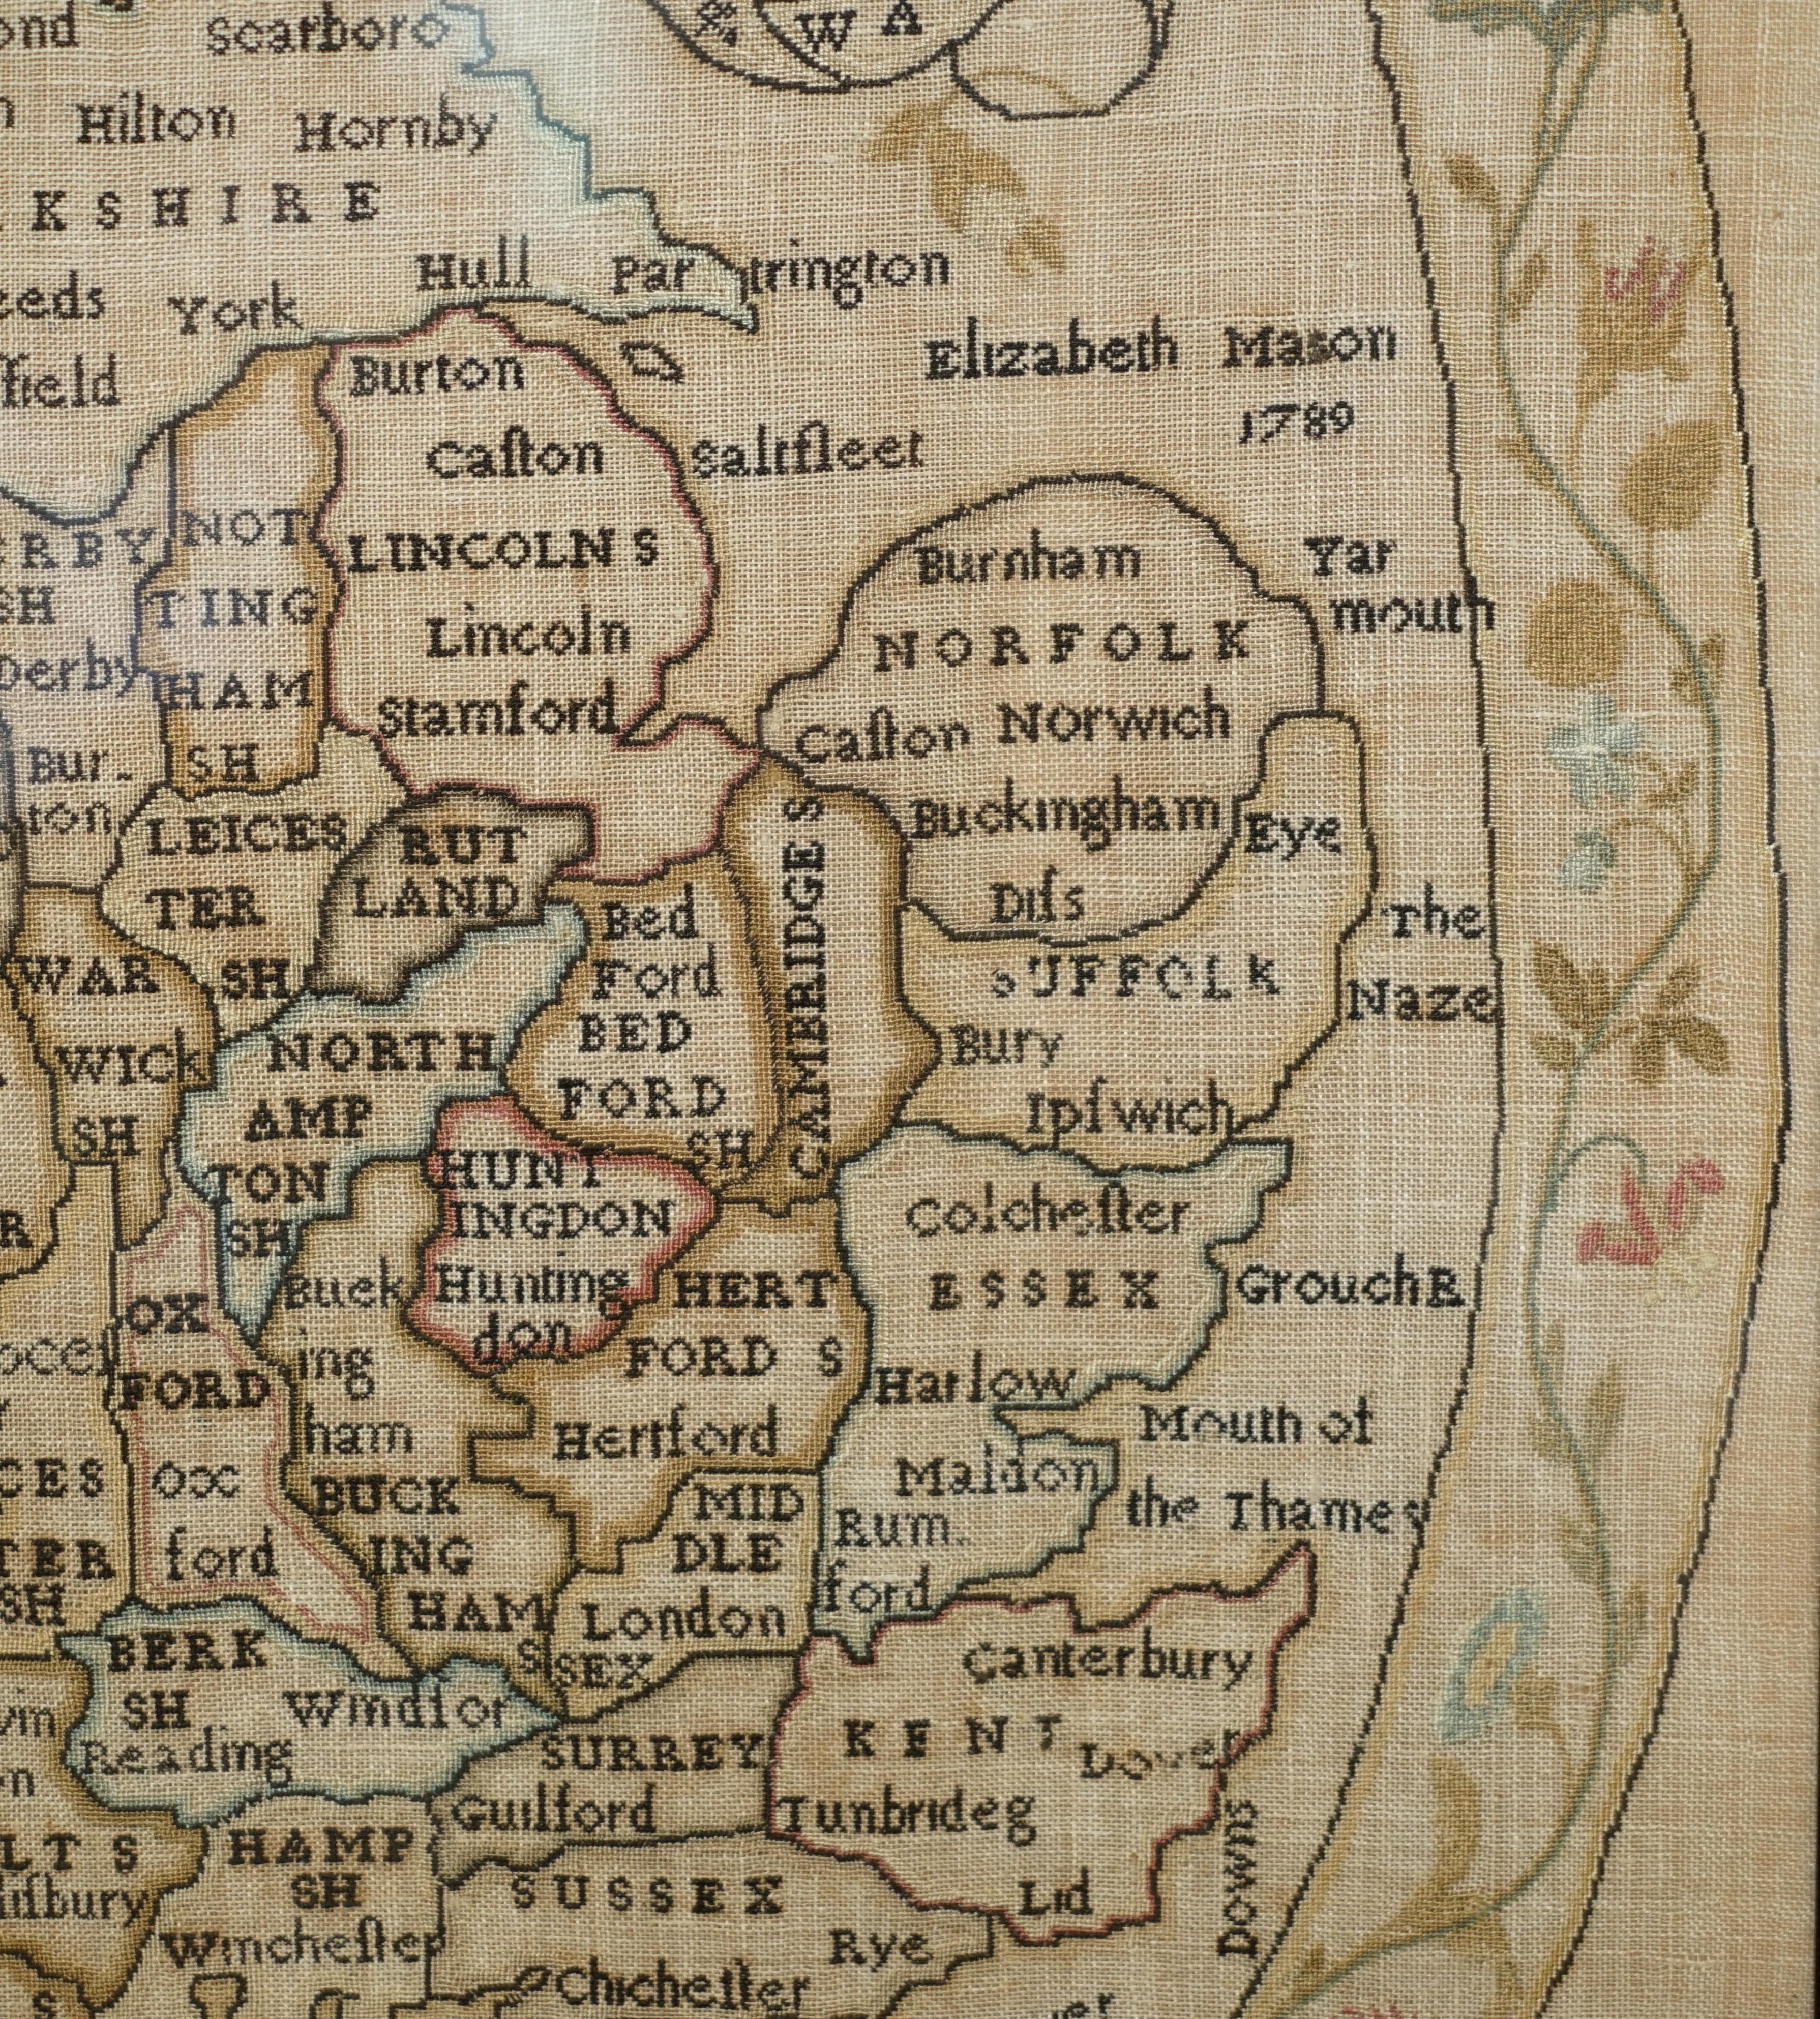 Antique Elizabeth Mason Signed 1789 George II Needlework Sampler Map of England For Sale 6